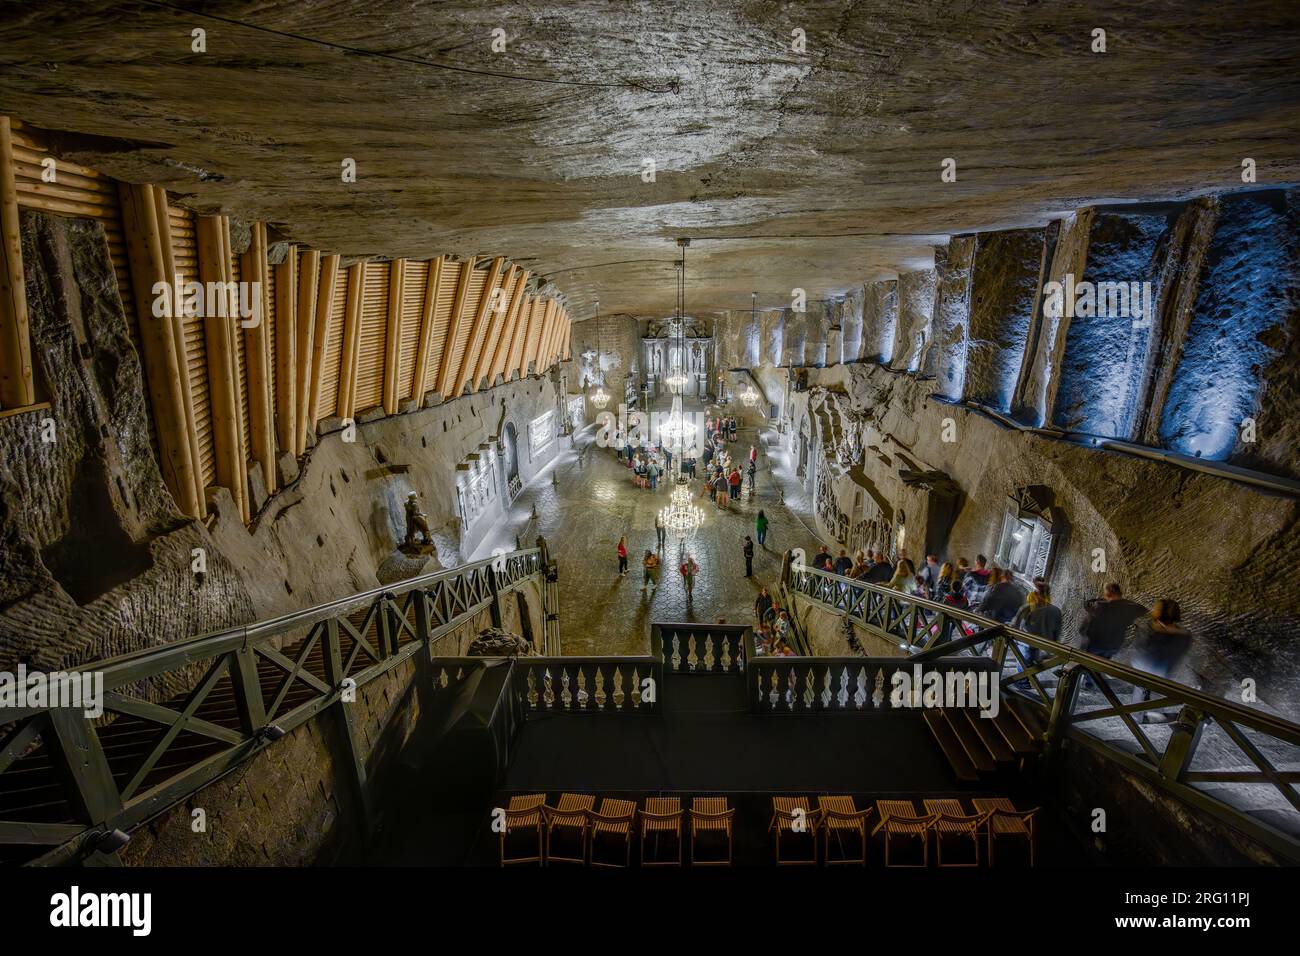 WIELICZKA, POLAND - MAY 24, 2023: Underground Wieliczka Salt Mine (13th century), one of the world's oldest salt mines, near Krakow, Poland. Stock Photo